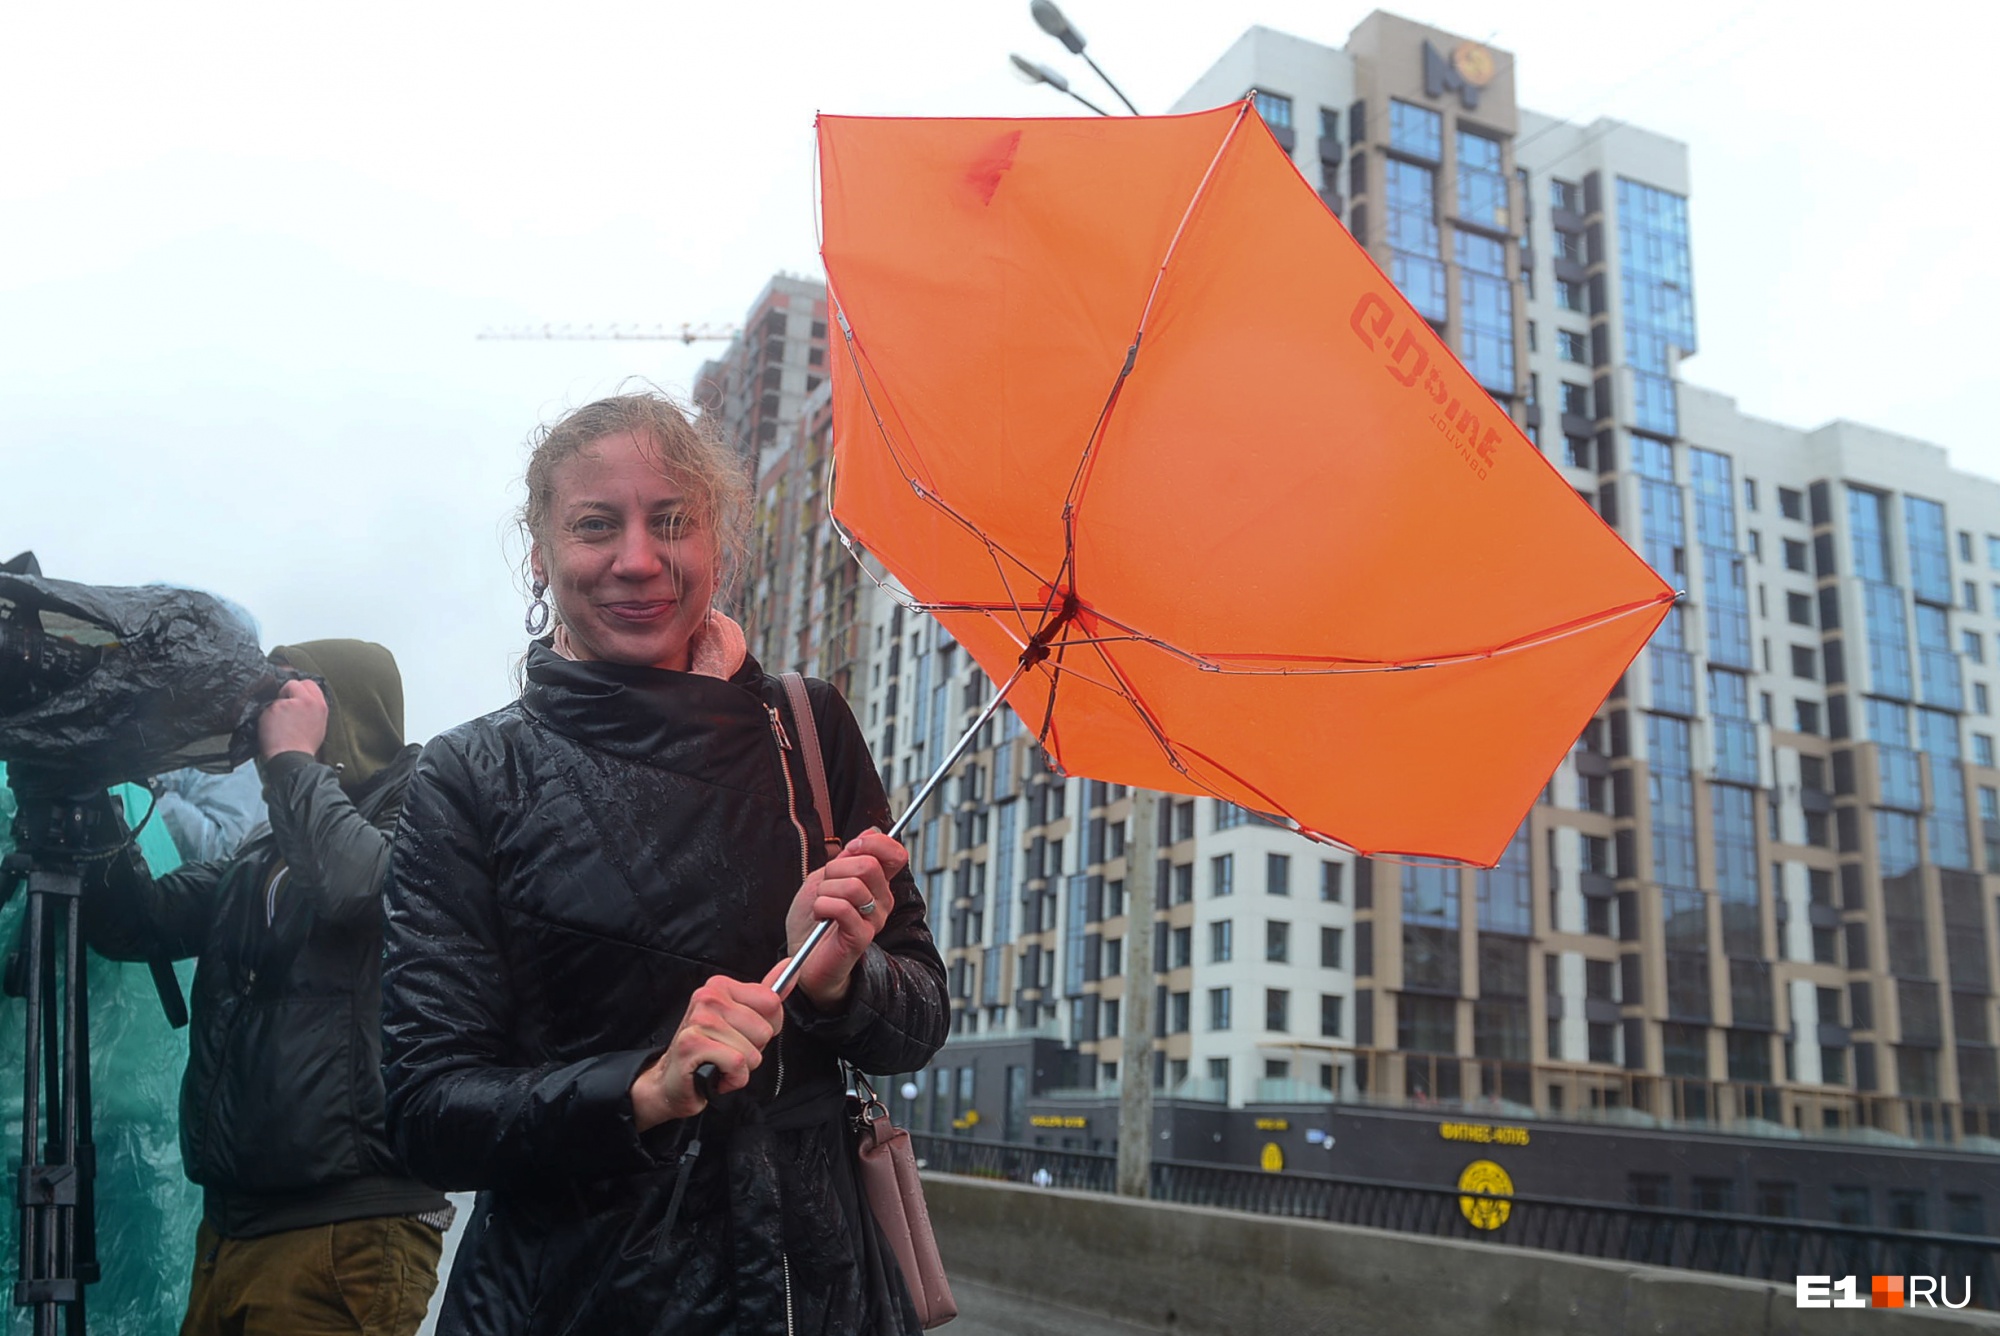 Держите зонты крепче: на Екатеринбург обрушатся дожди и сильный ветер